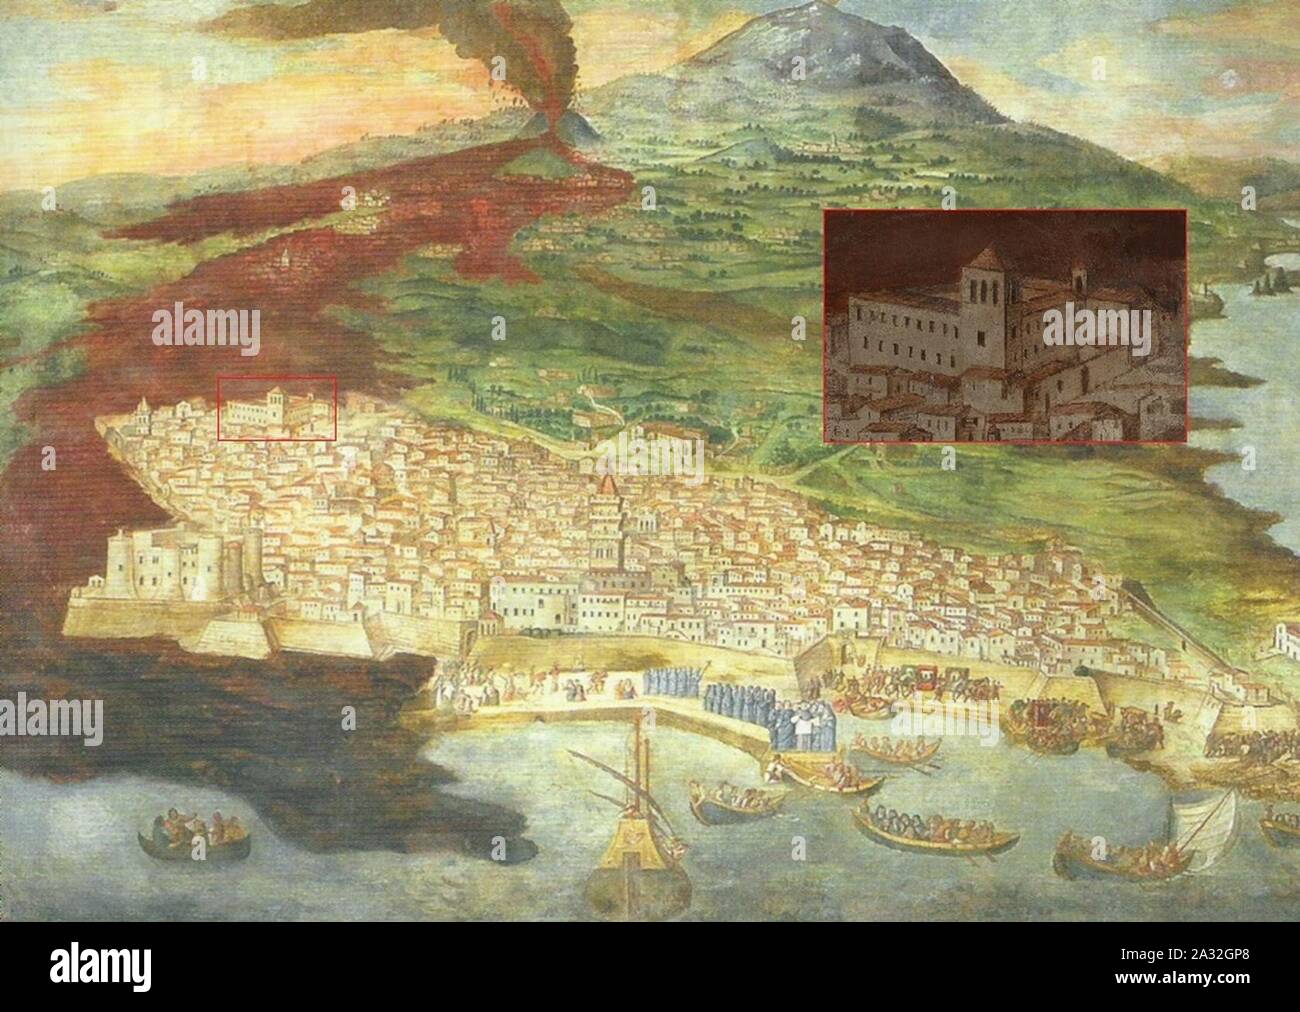 Etna eruzione 1669 platania con evidenziato il monastero di San Nicola l'Arena. Stock Photo